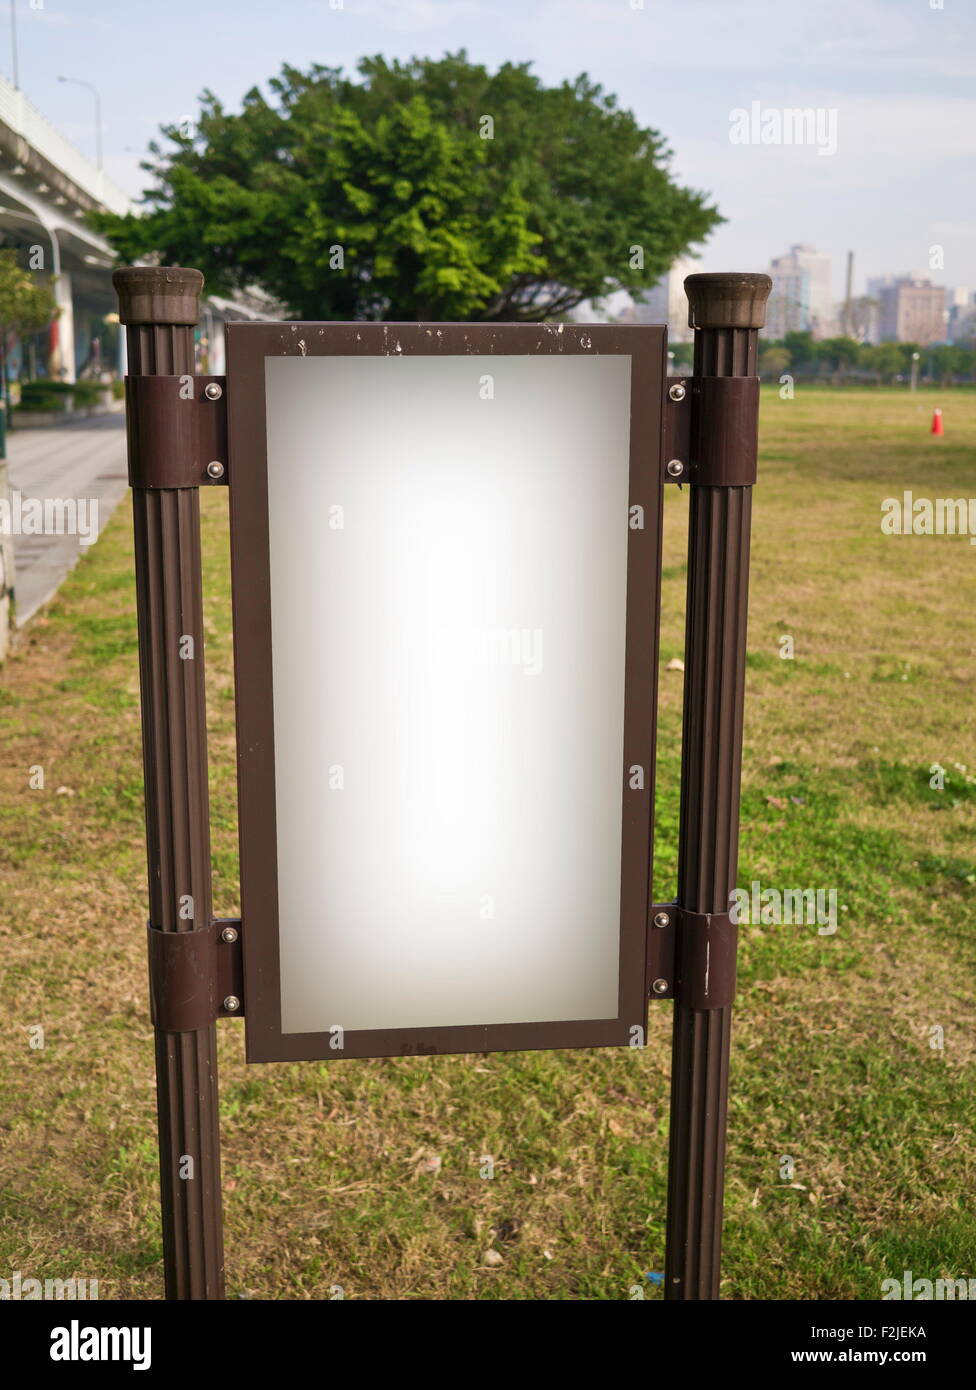 blank billboard in public space Stock Photo